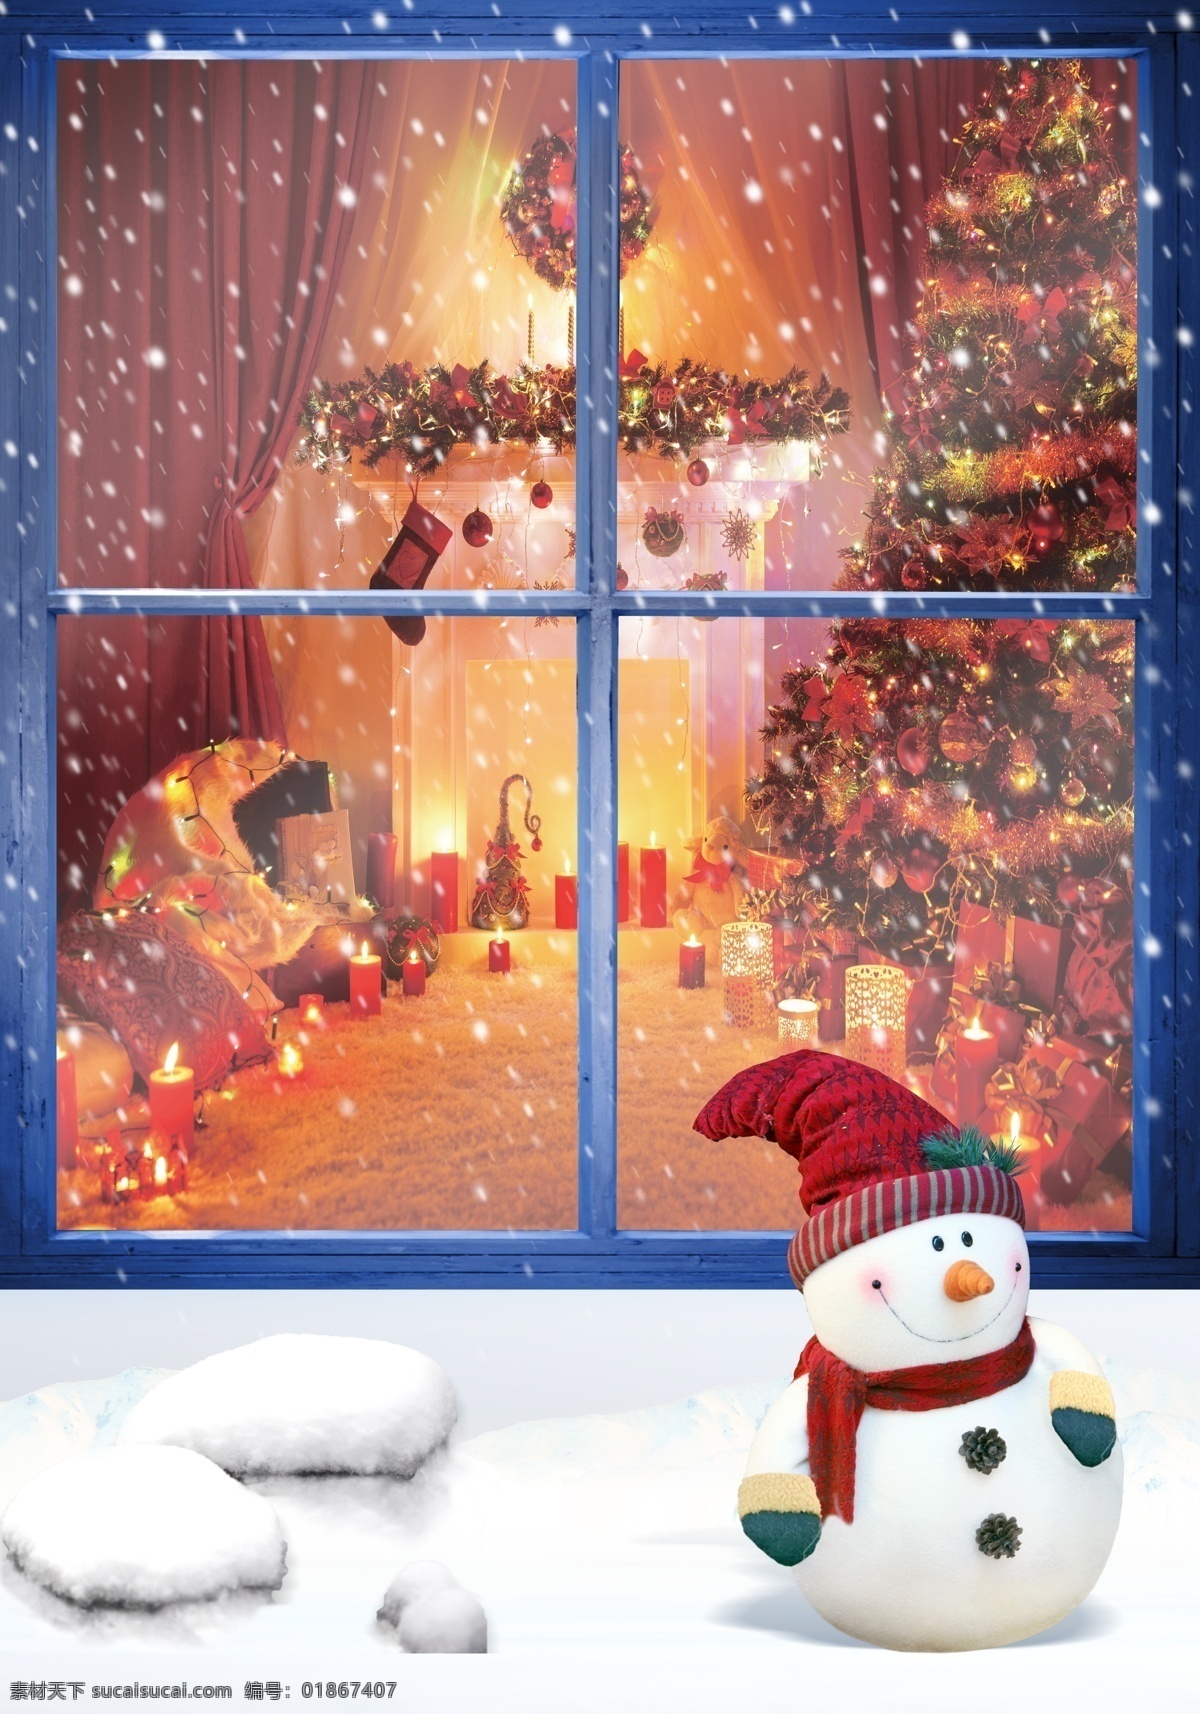 温馨圣诞节 圣诞节 雪人 雪地 橱窗 圣诞树 礼物